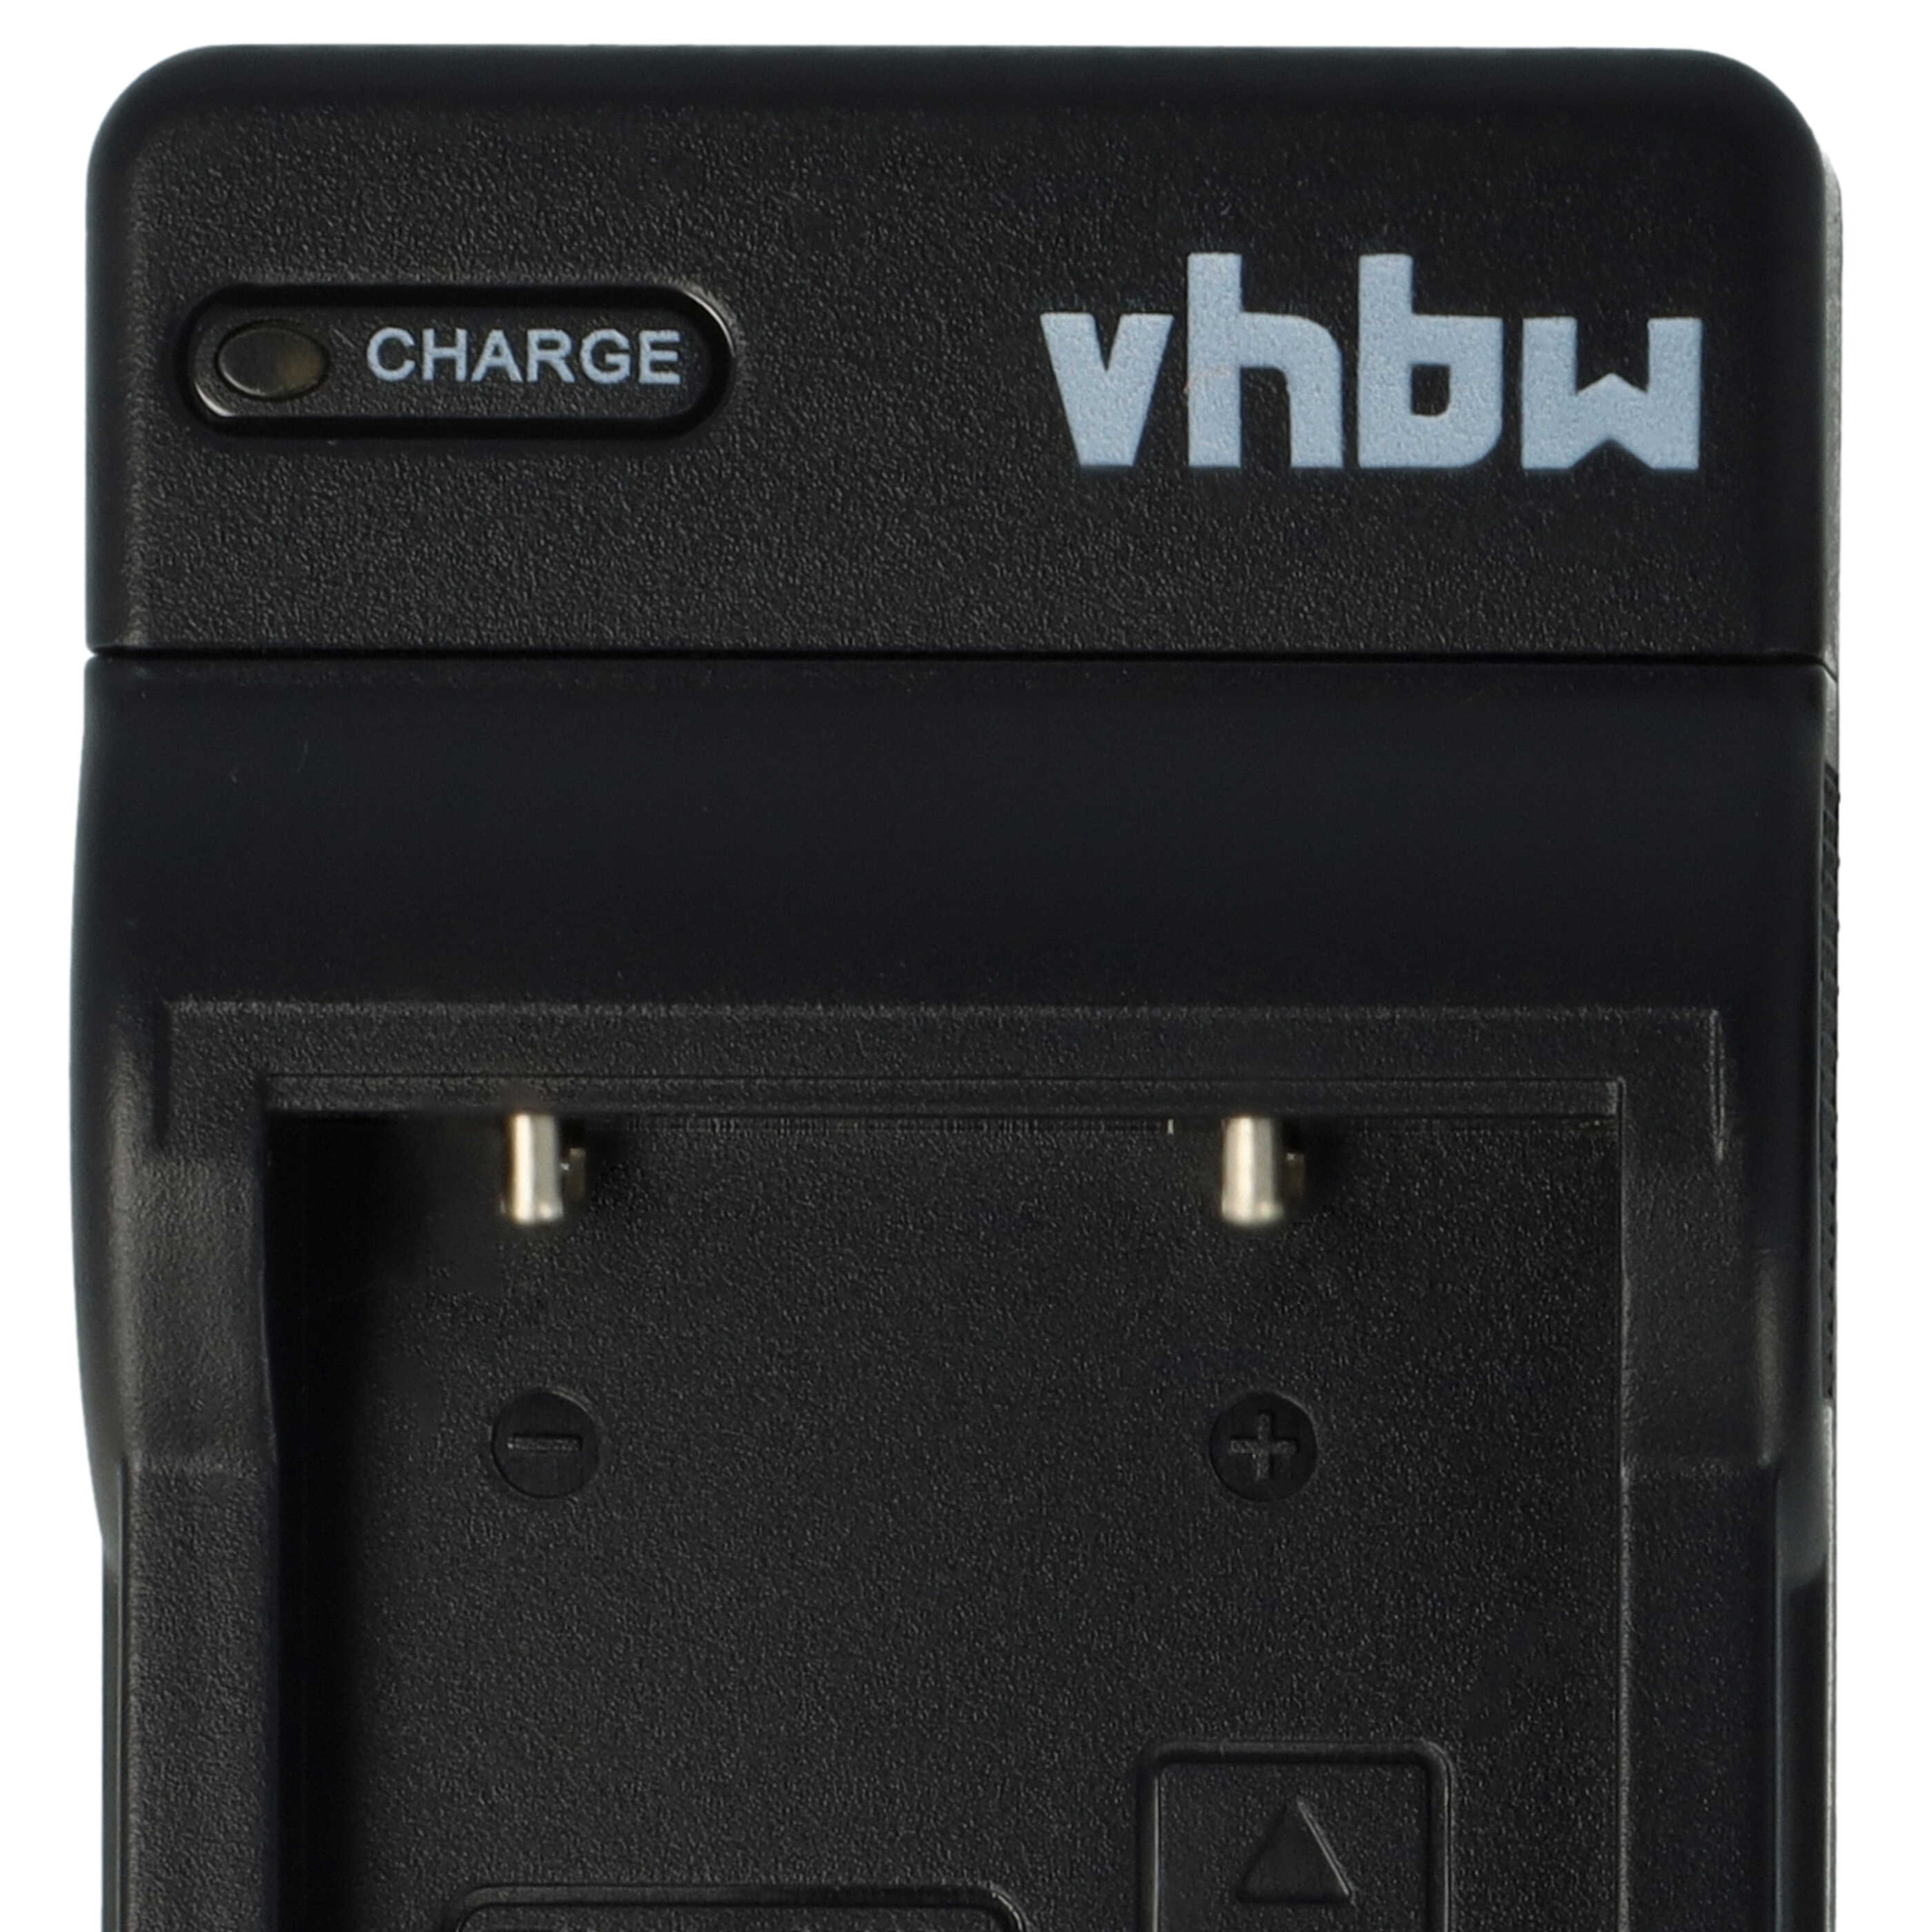 Battery Charger suitable for Nikon EN-EL5 Camera etc. - 0.5 A, 4.2 V